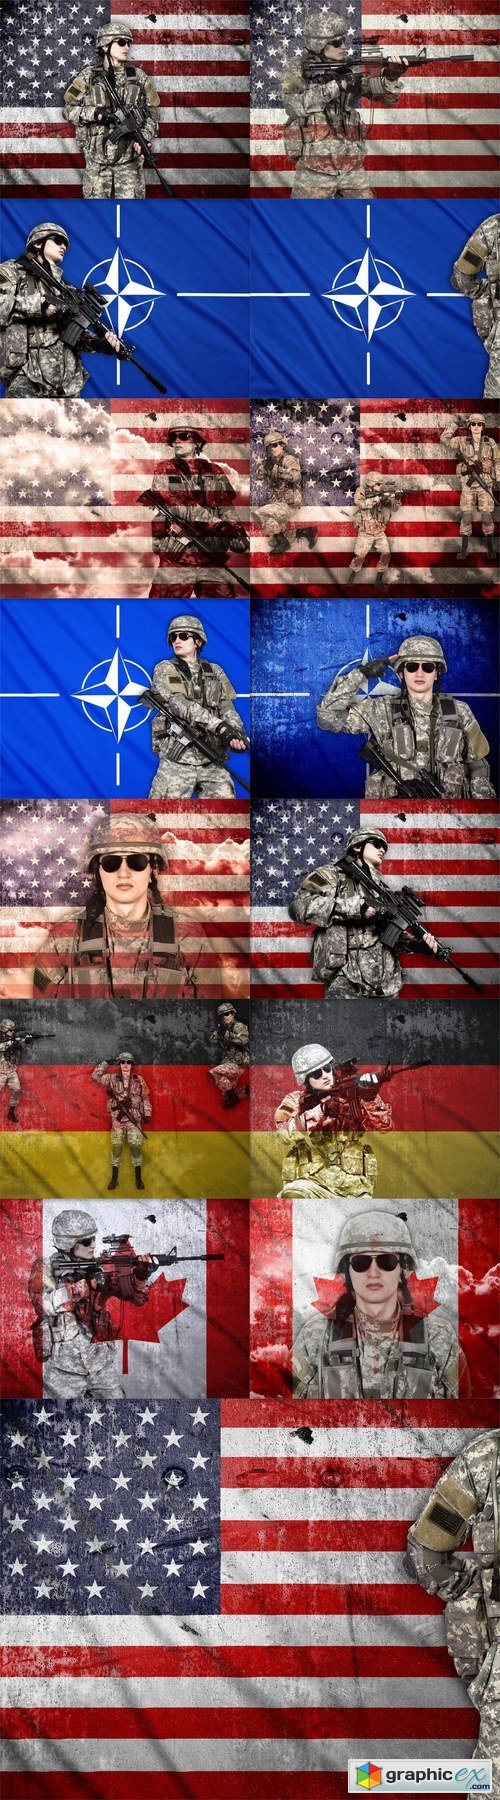 NATO soldier